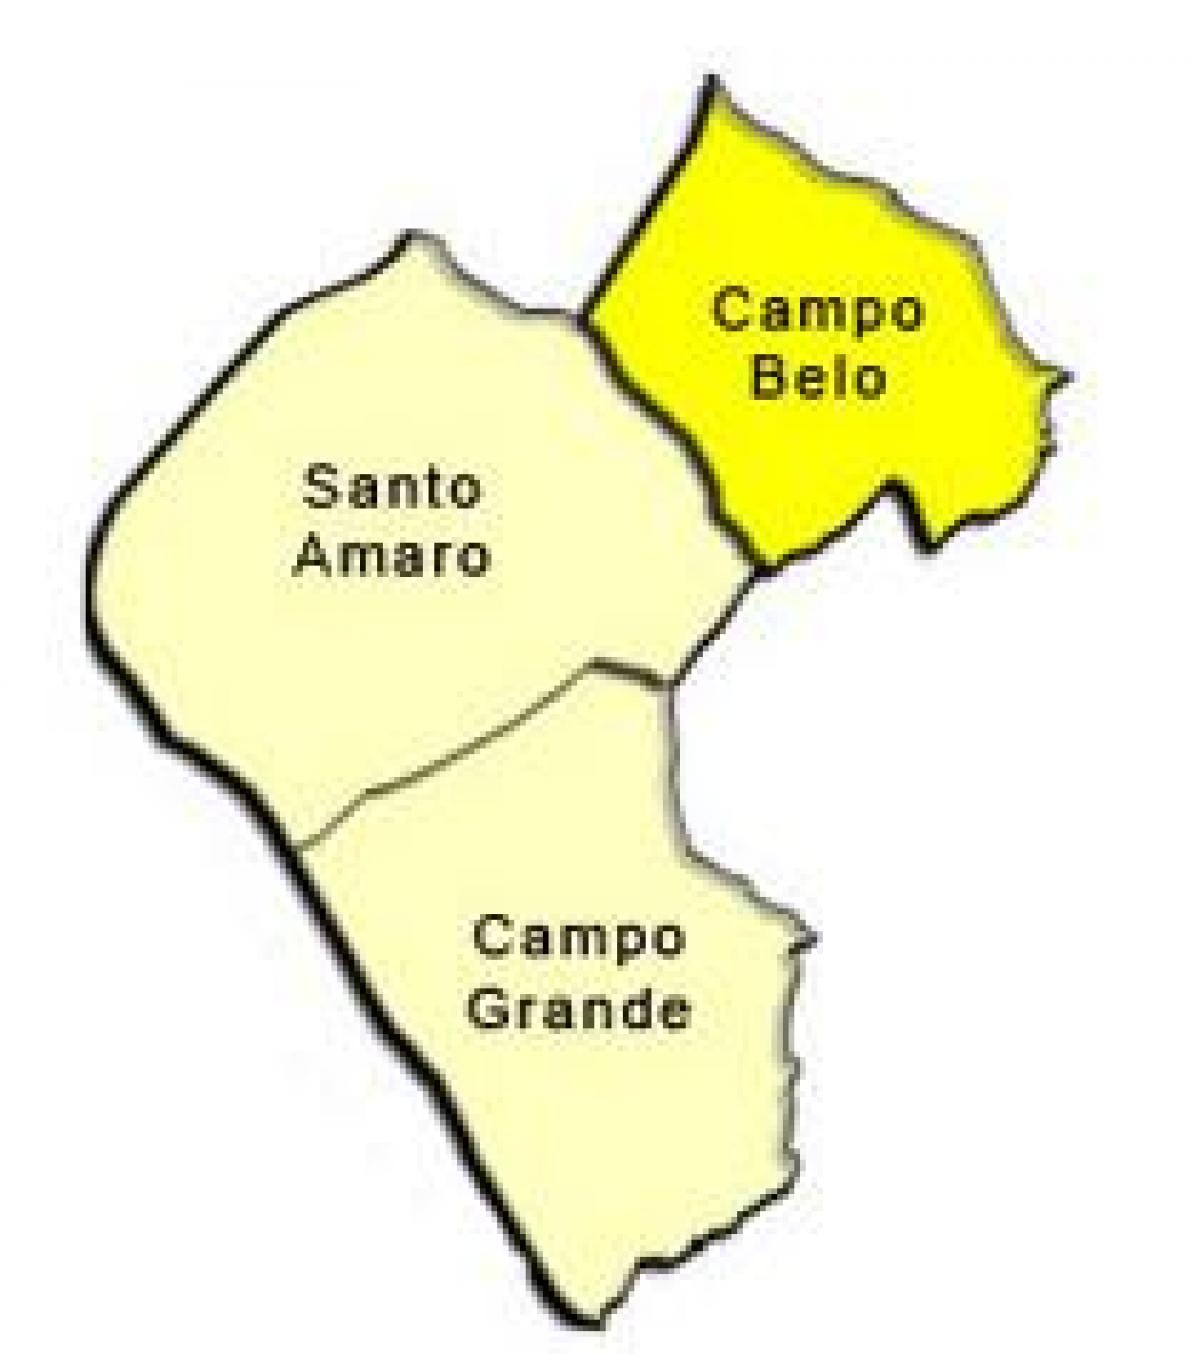 Harta Santo Amaro sub-prefectura